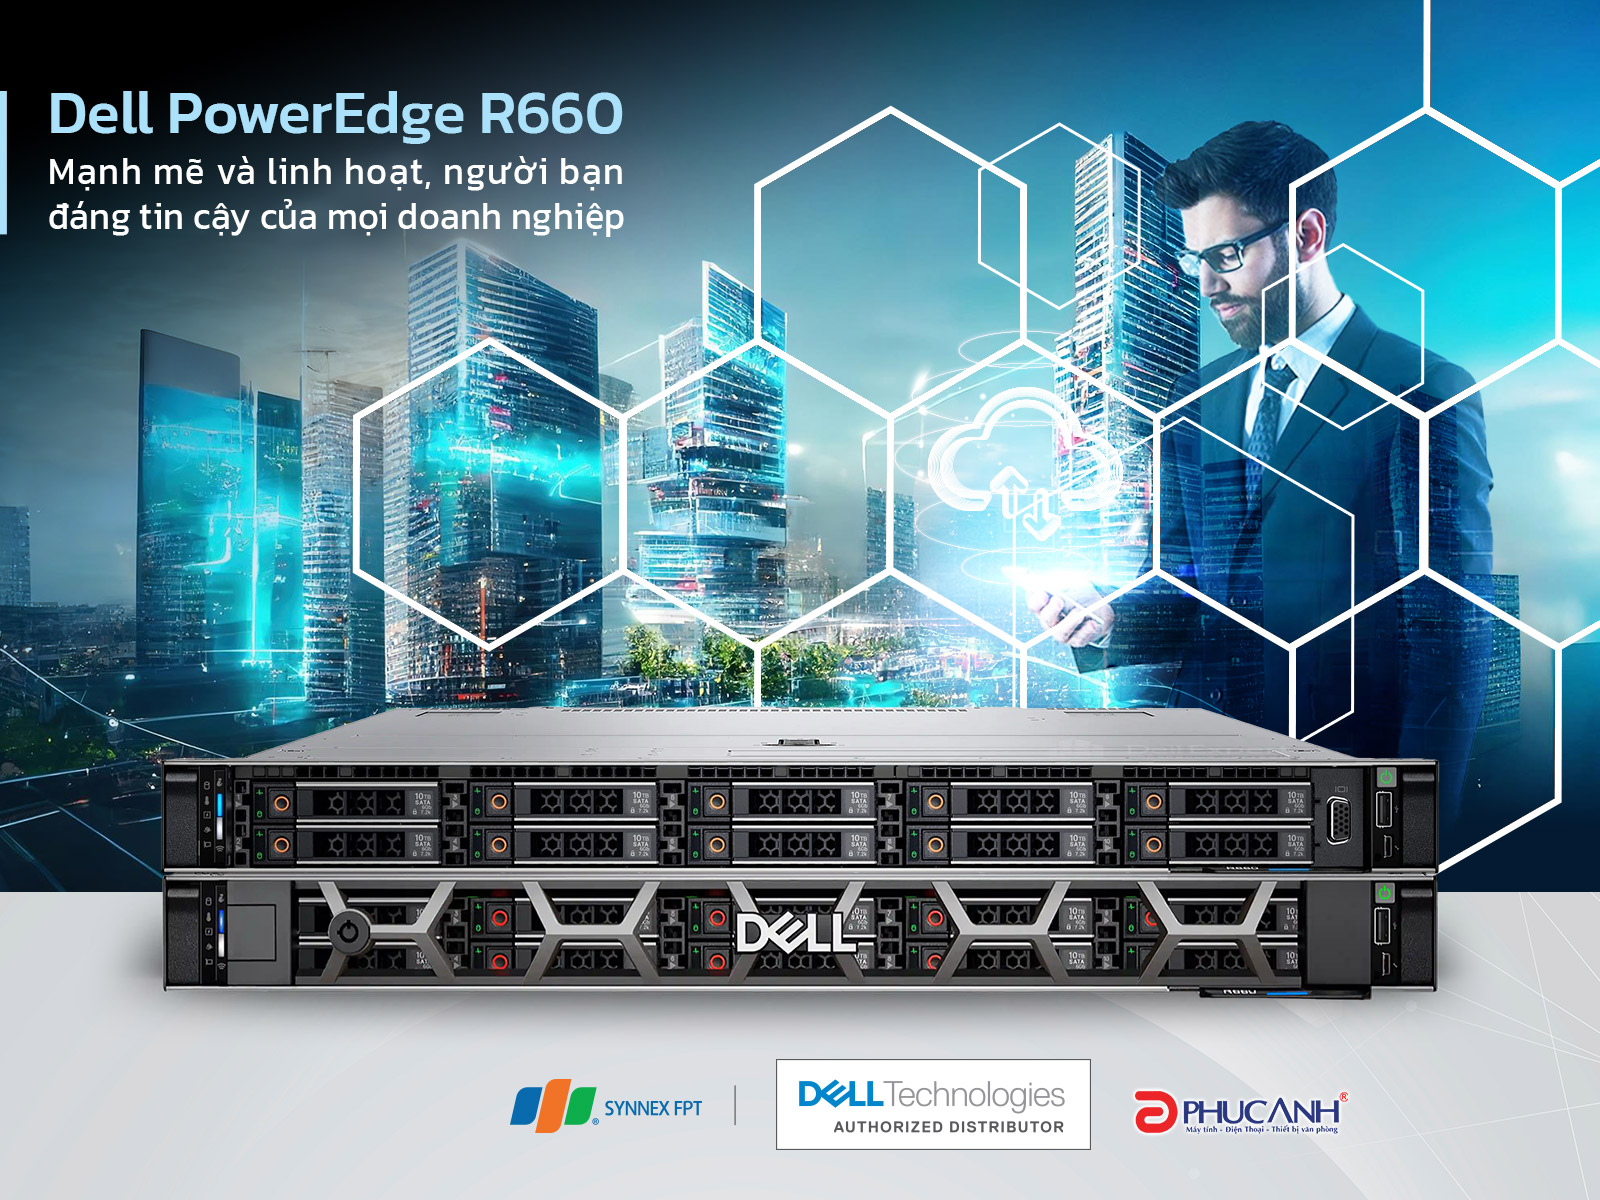 Dell PowerEdge R660 - Mạnh mẽ và linh hoạt, người bạn đáng tin cậy của mọi doanh nghiệp